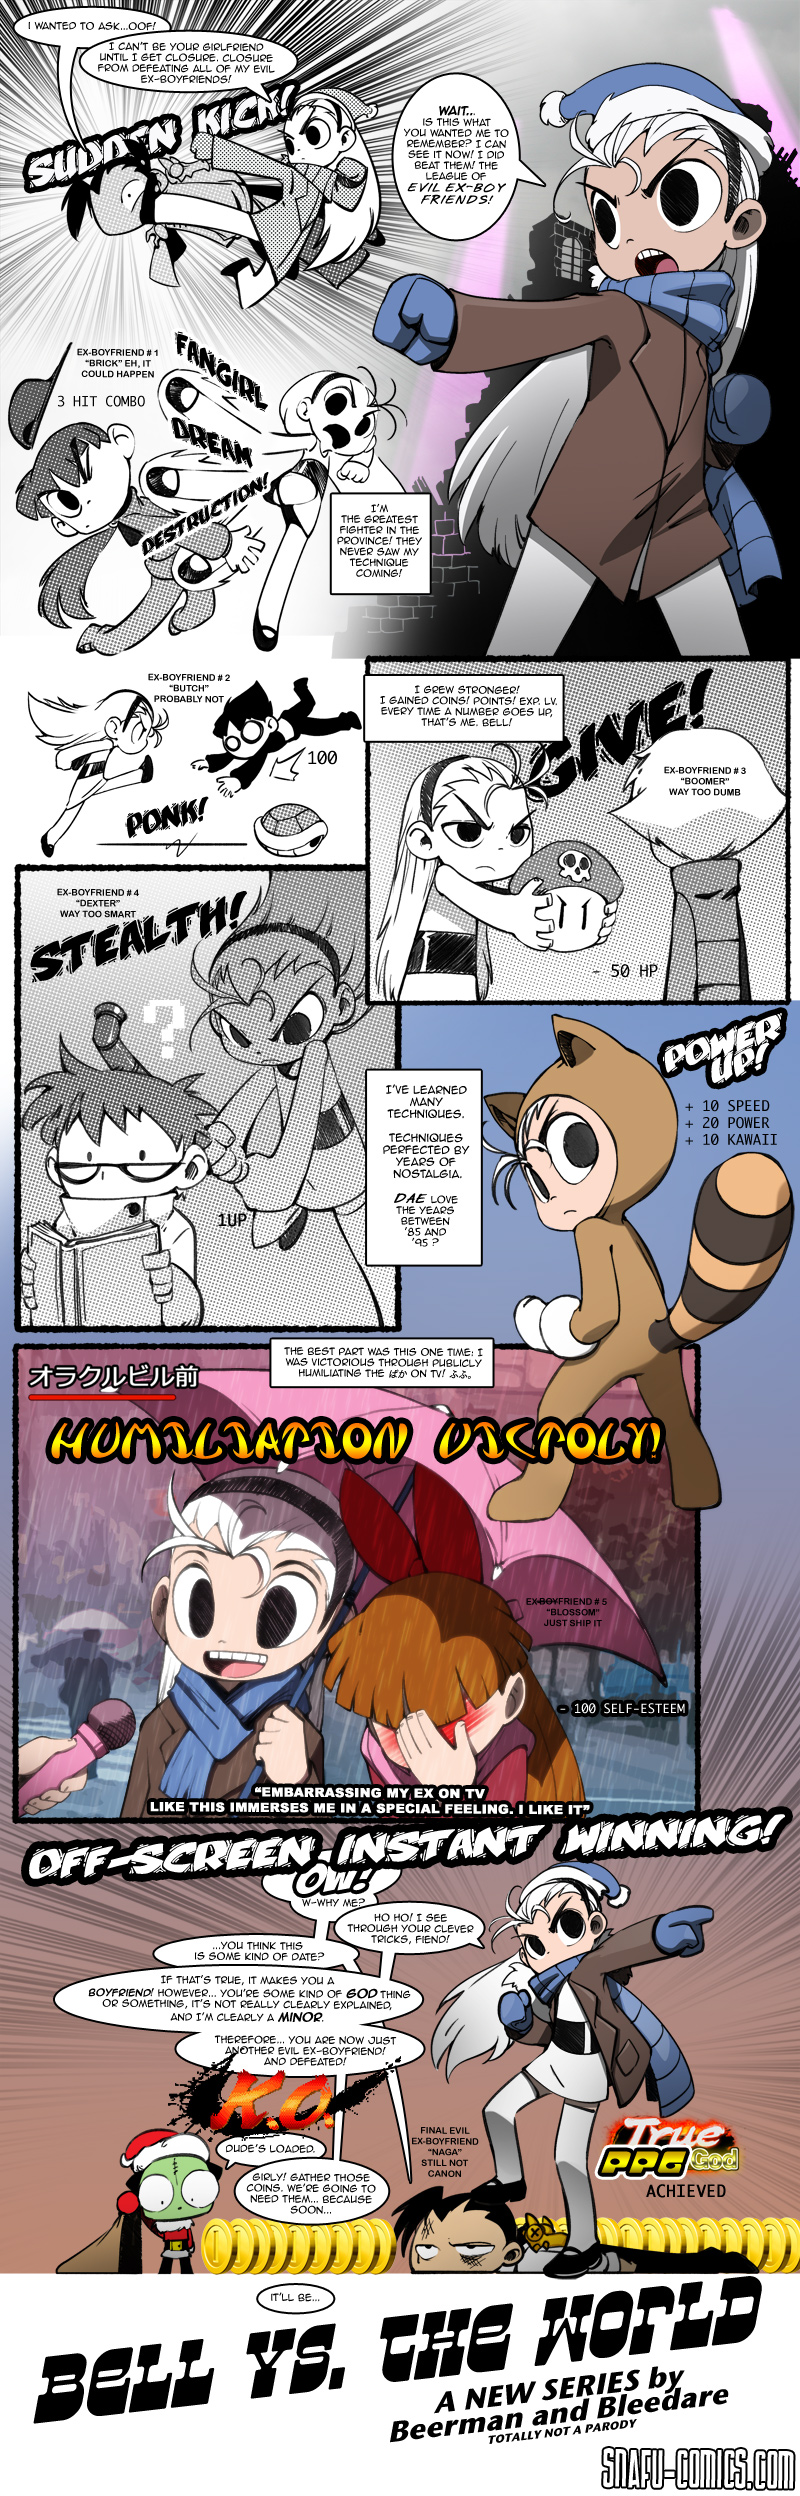 Oh My Blom! - Cartoon Network Fan Art (40136997) - Fanpop